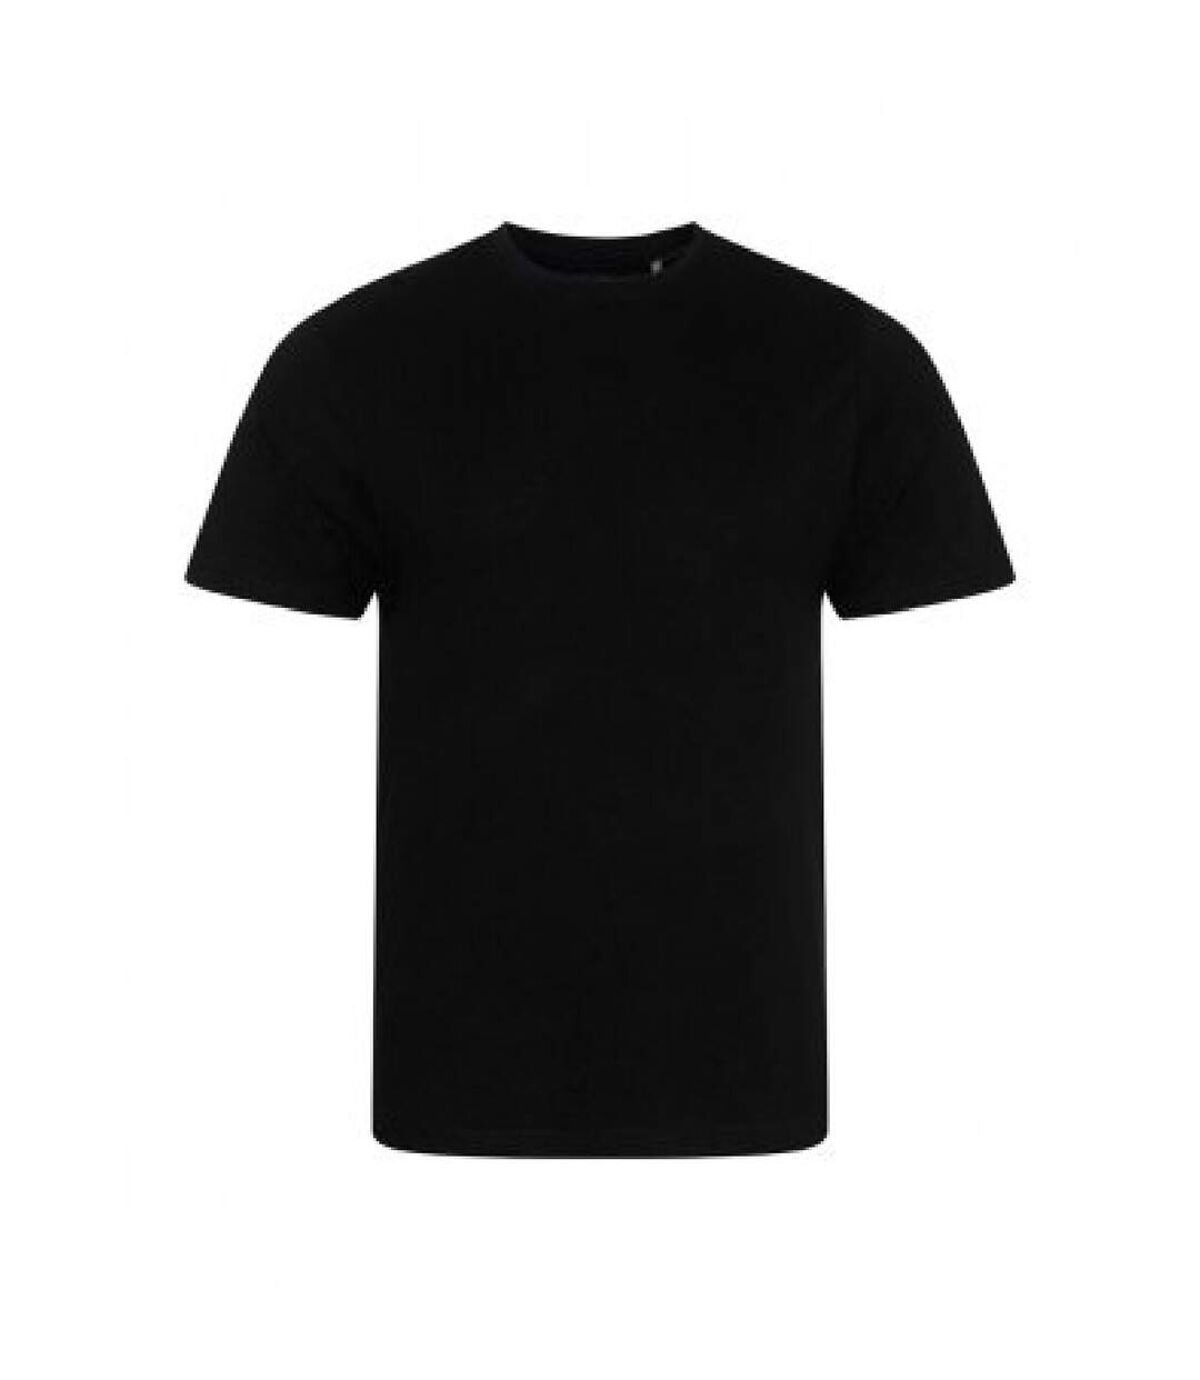 Ecologie - T-shirt - Hommes (Noir) - UTPC3190